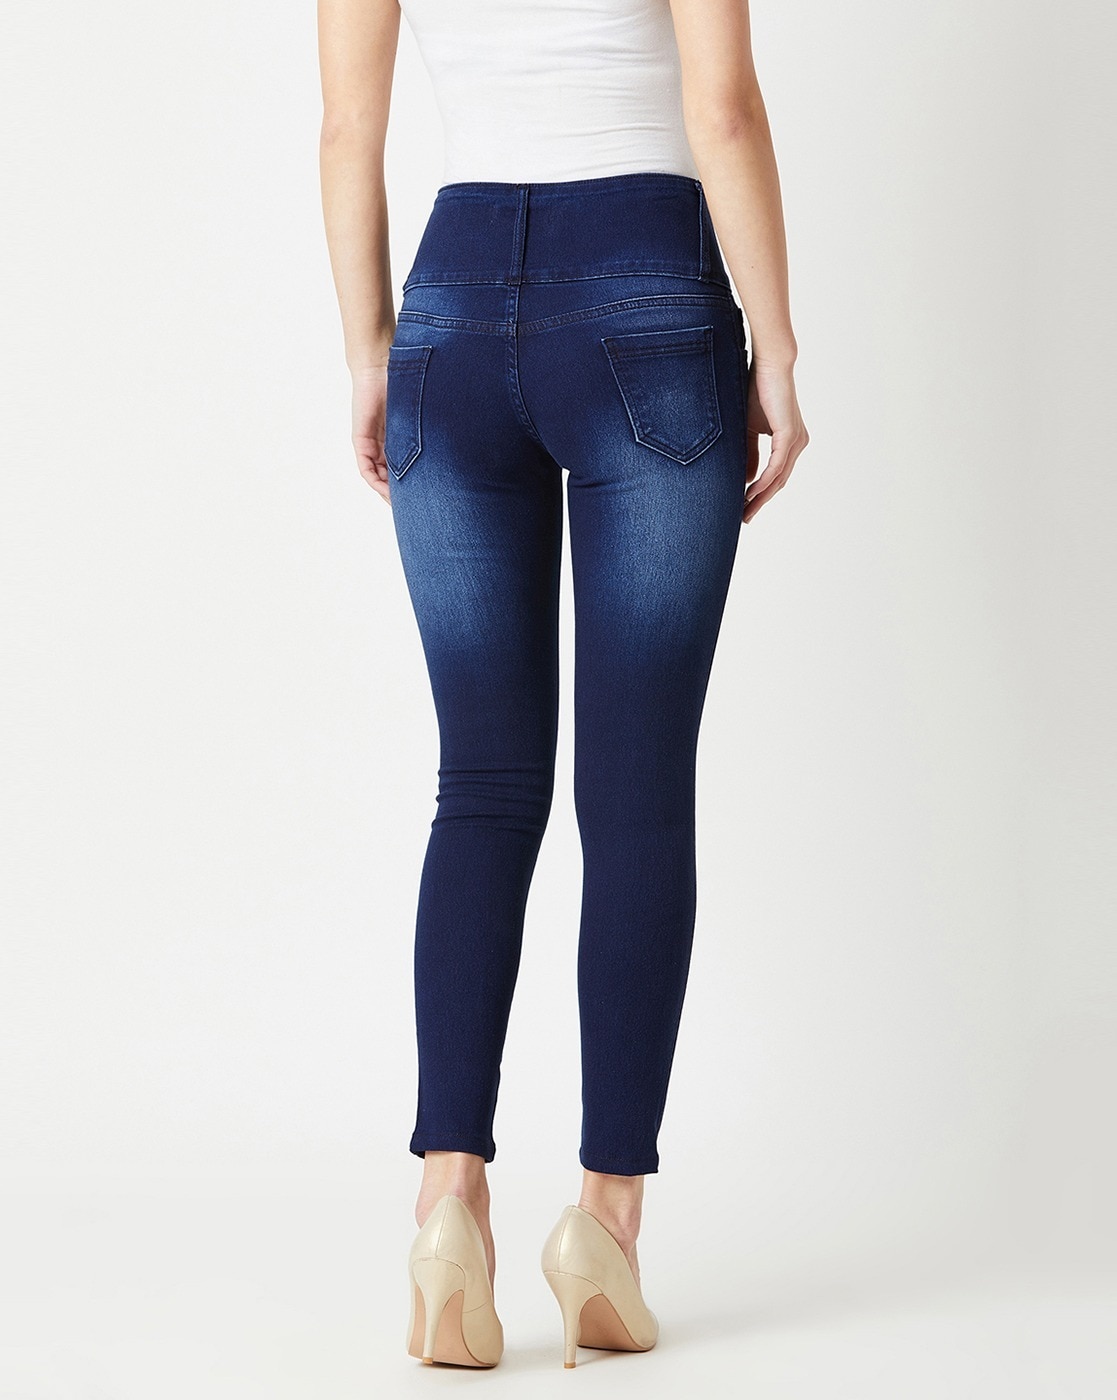 Buy Dark Blue Mid Rise Pushup Skinny Jeans for Women Online